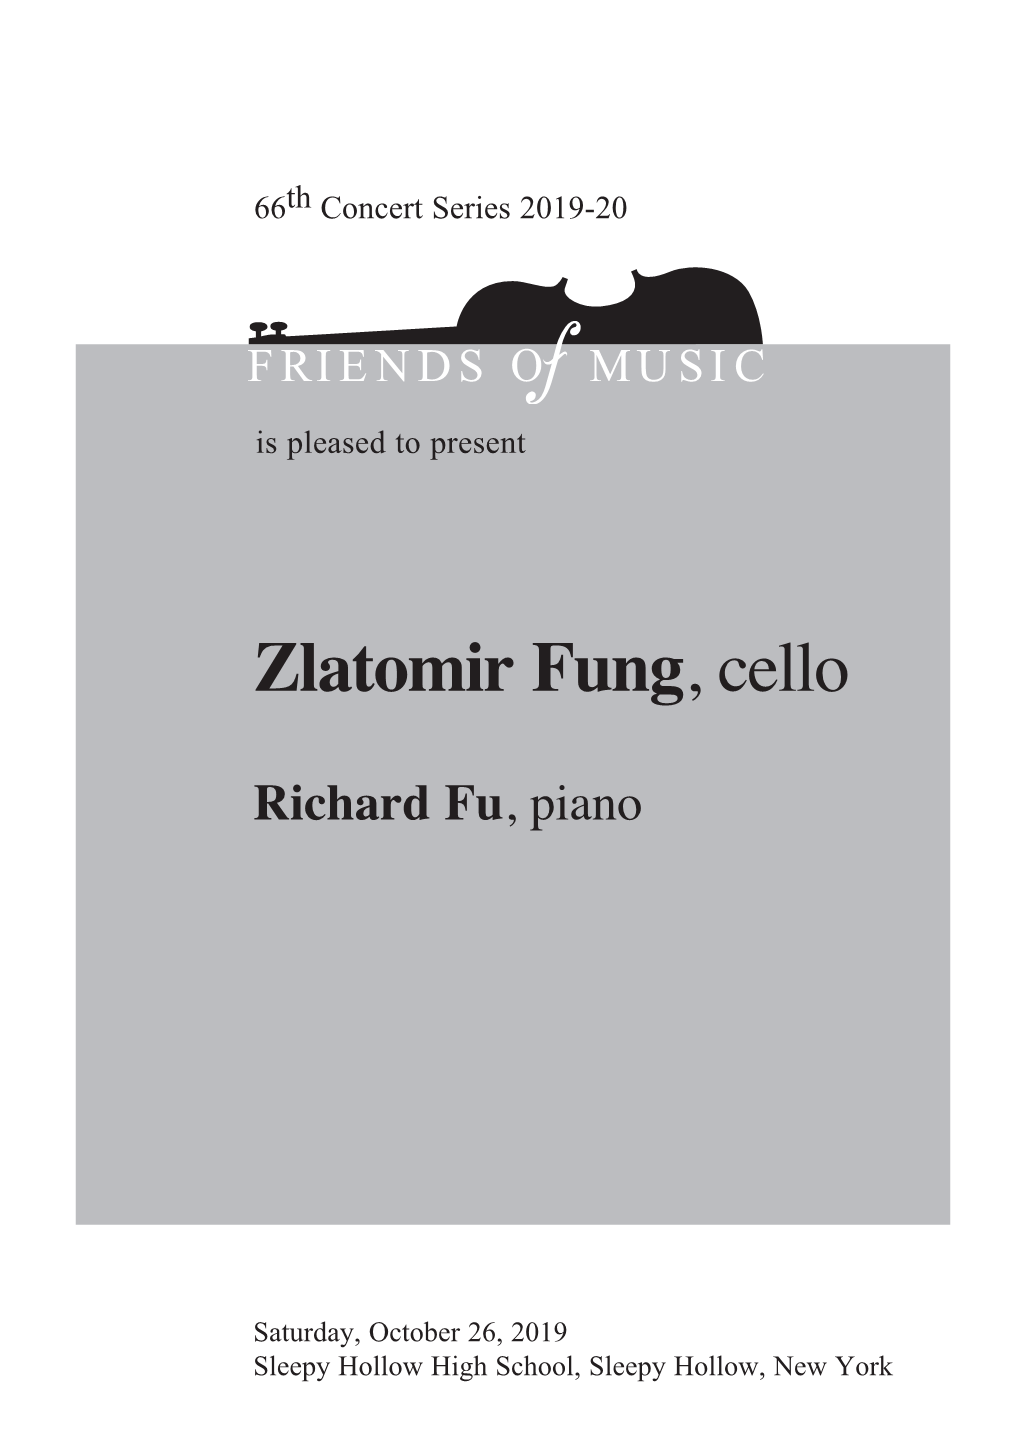 Zlatomir Fung, Cello